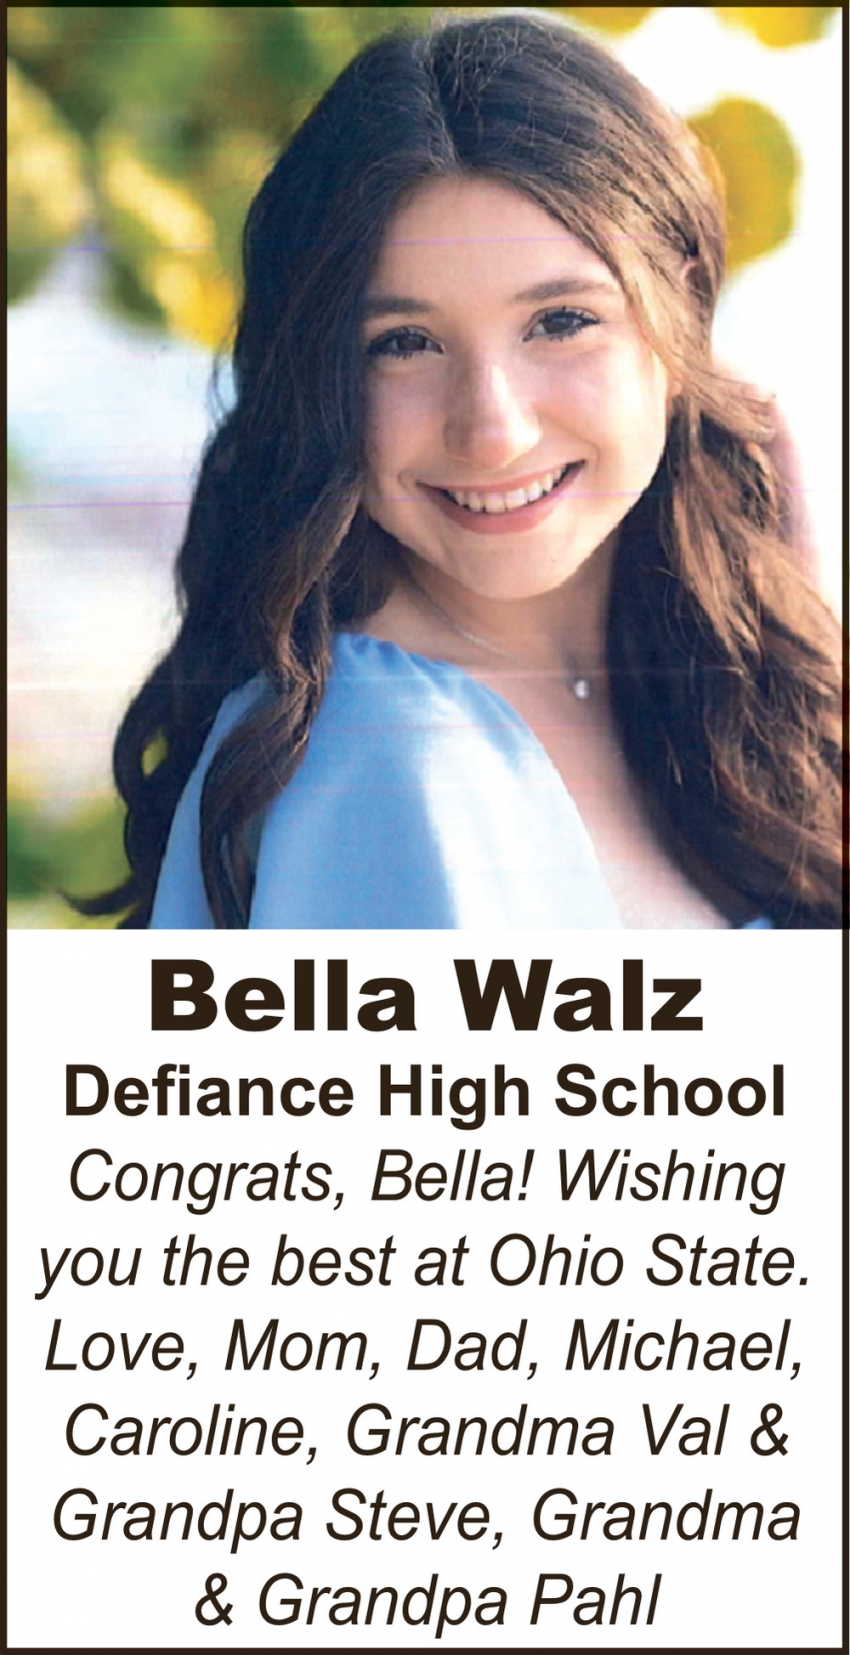 Congrats, Bella!